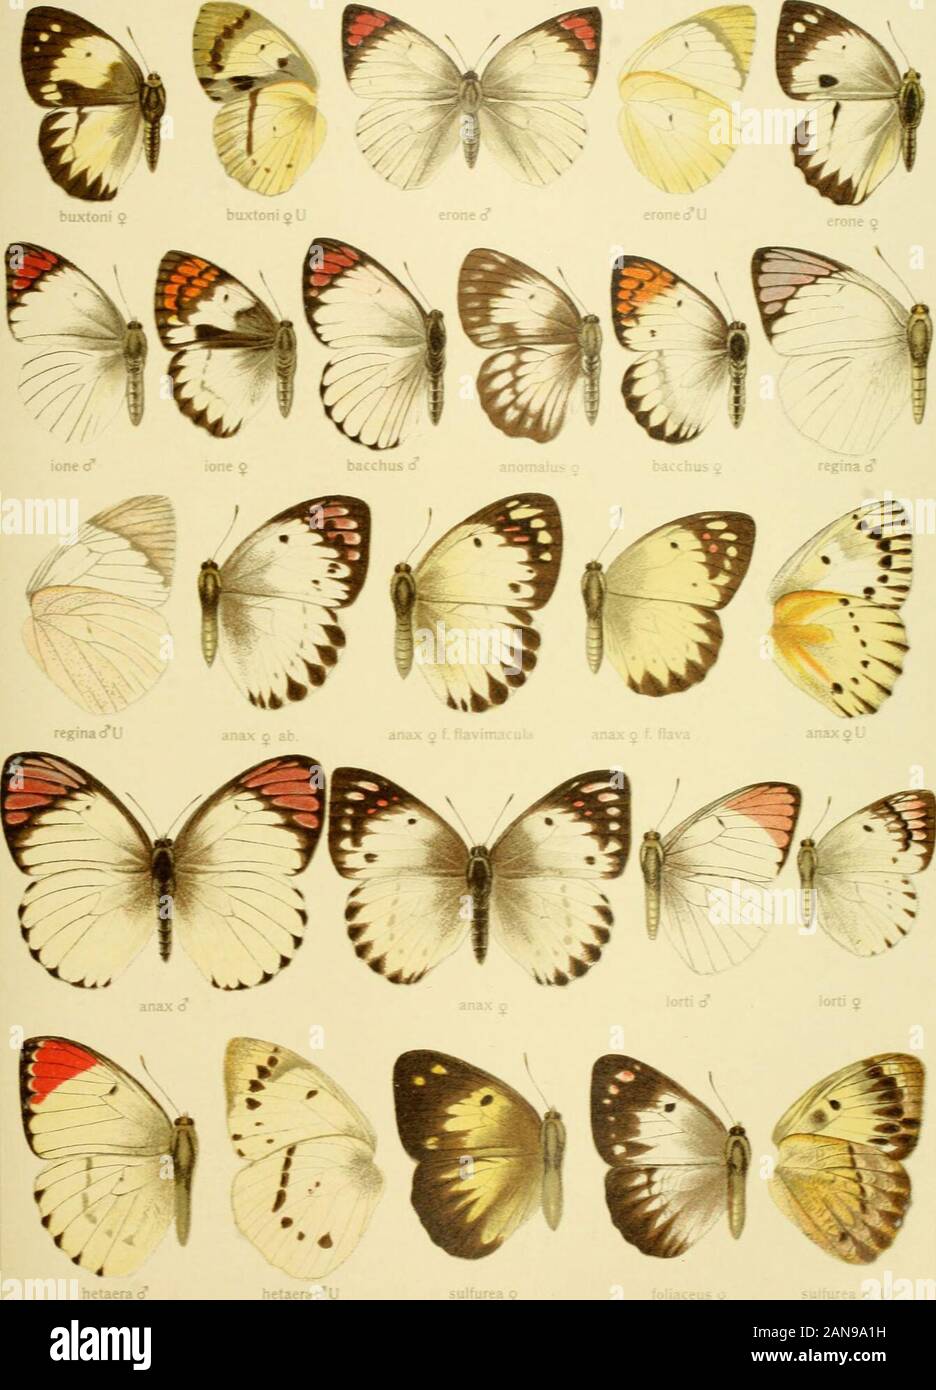 Die Gross-Schmetterlinge der Erde : eine systematische Bearbeitung der bis jetzt bekannten Gross-Schmetterlinge . jobiiia g U DuAlori! j looina &lt;^ »LM!)&lt;1 V I. dlUiUci Pars II. Fauna airicaiia xm TERACOLUS 17. Pars II. Pauna africana 1 XIII TERACOLUS 18 Stock Photo